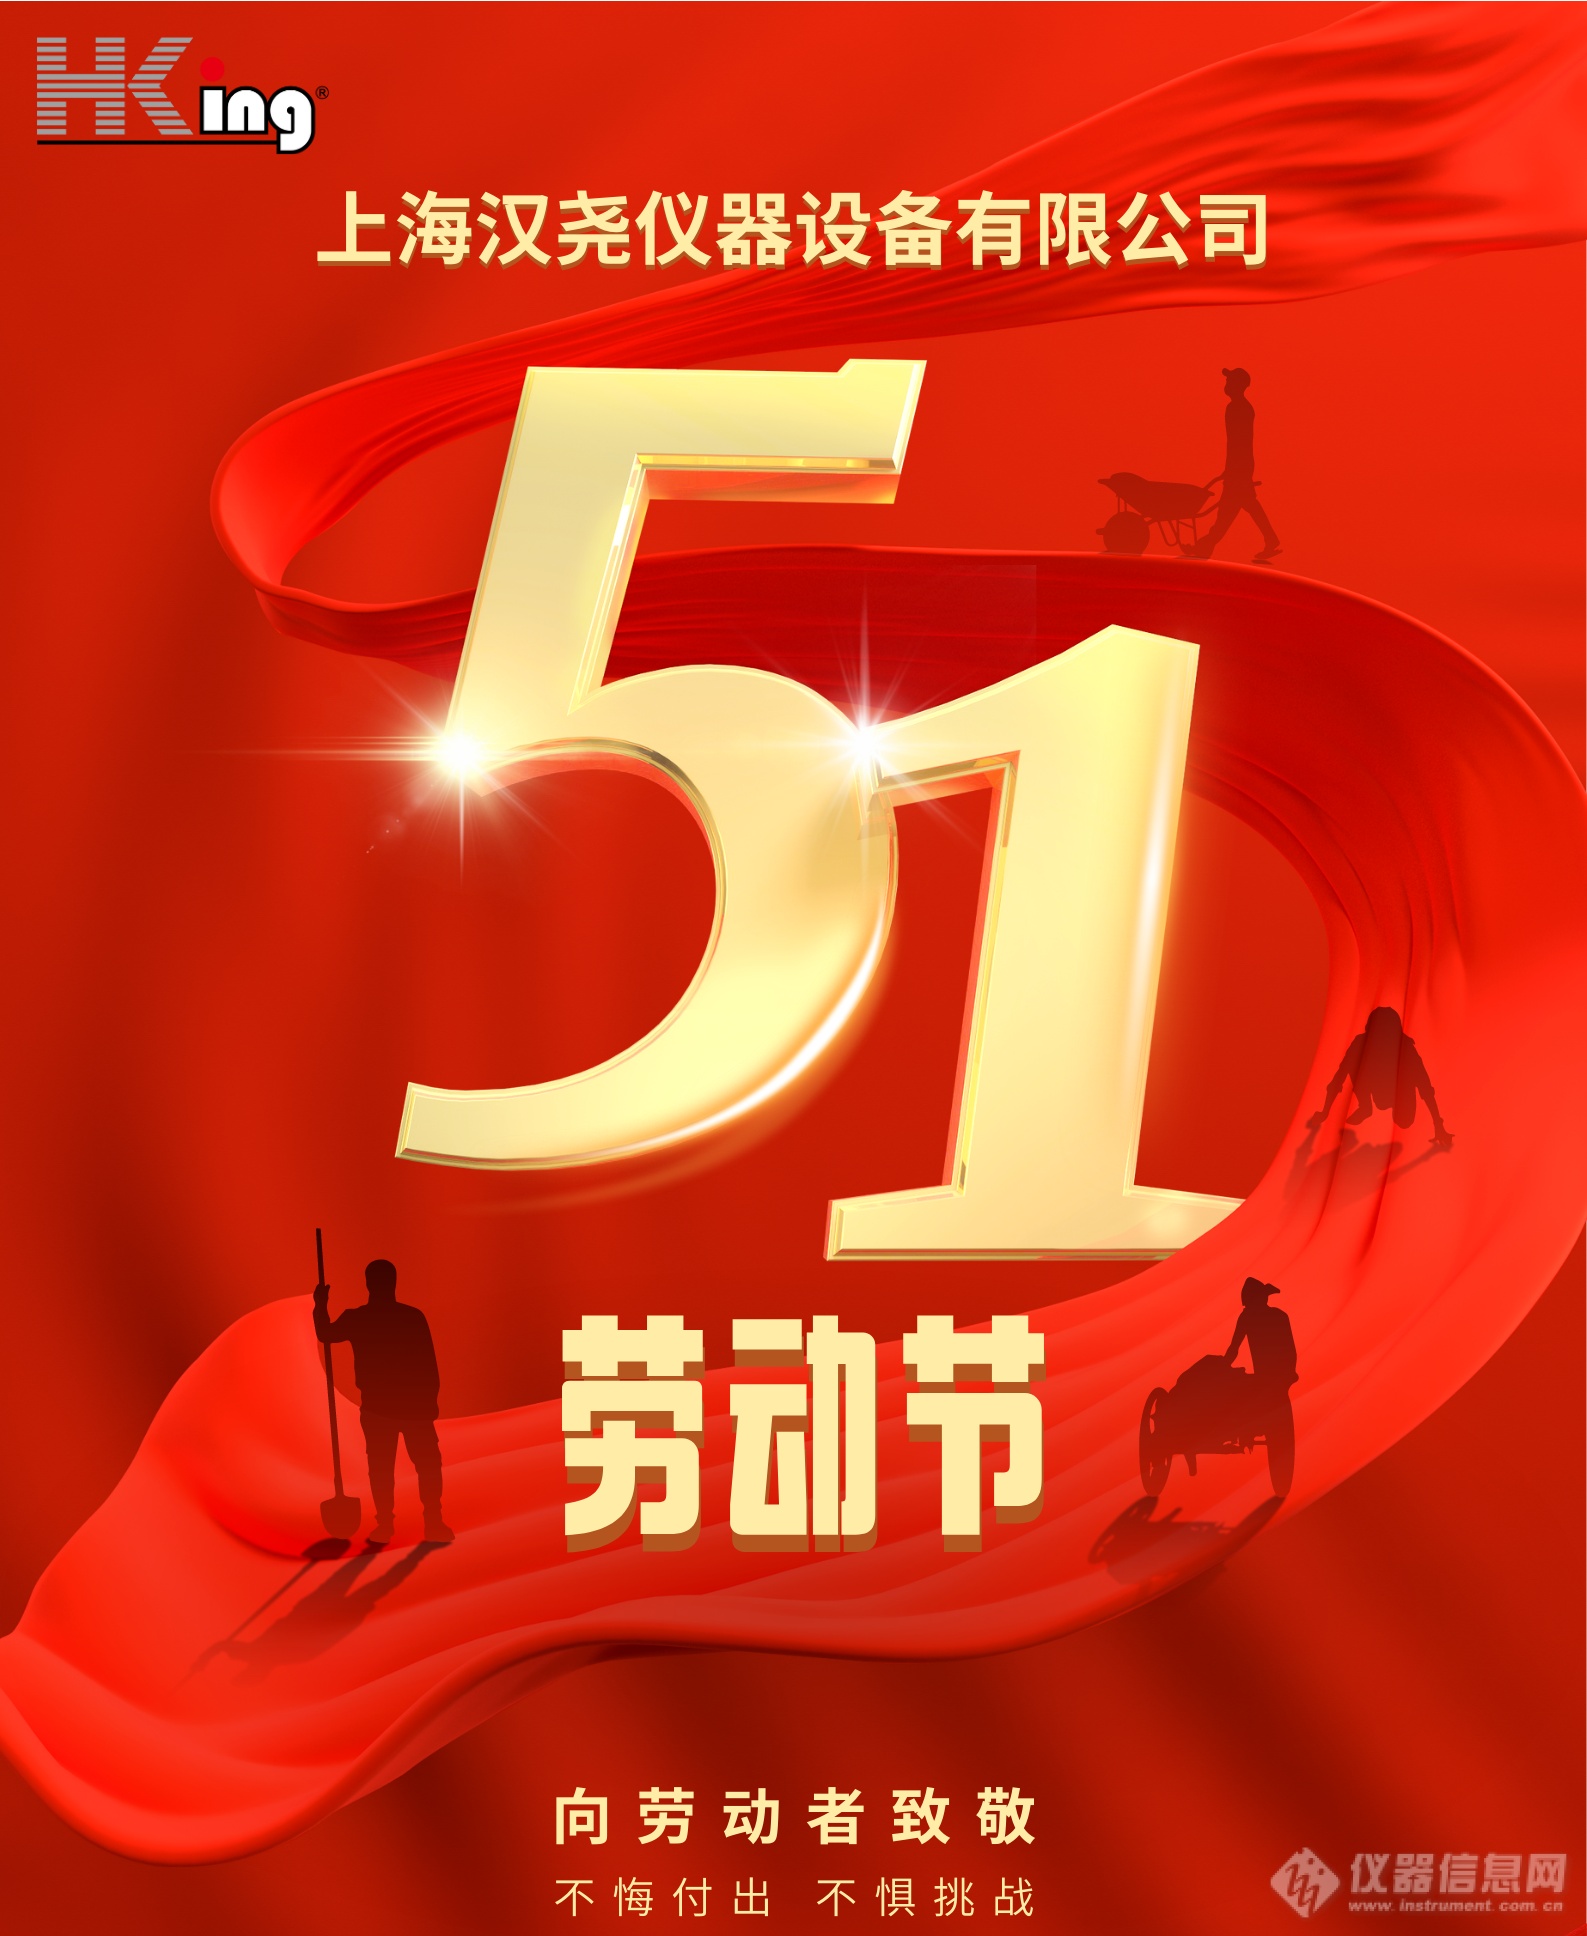 红金色51立体字大标题劳动节节日宣传中文海报_副本.png